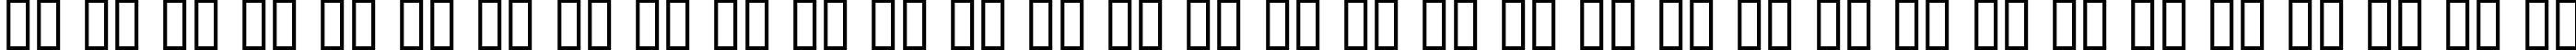 Пример написания русского алфавита шрифтом Judge Hard